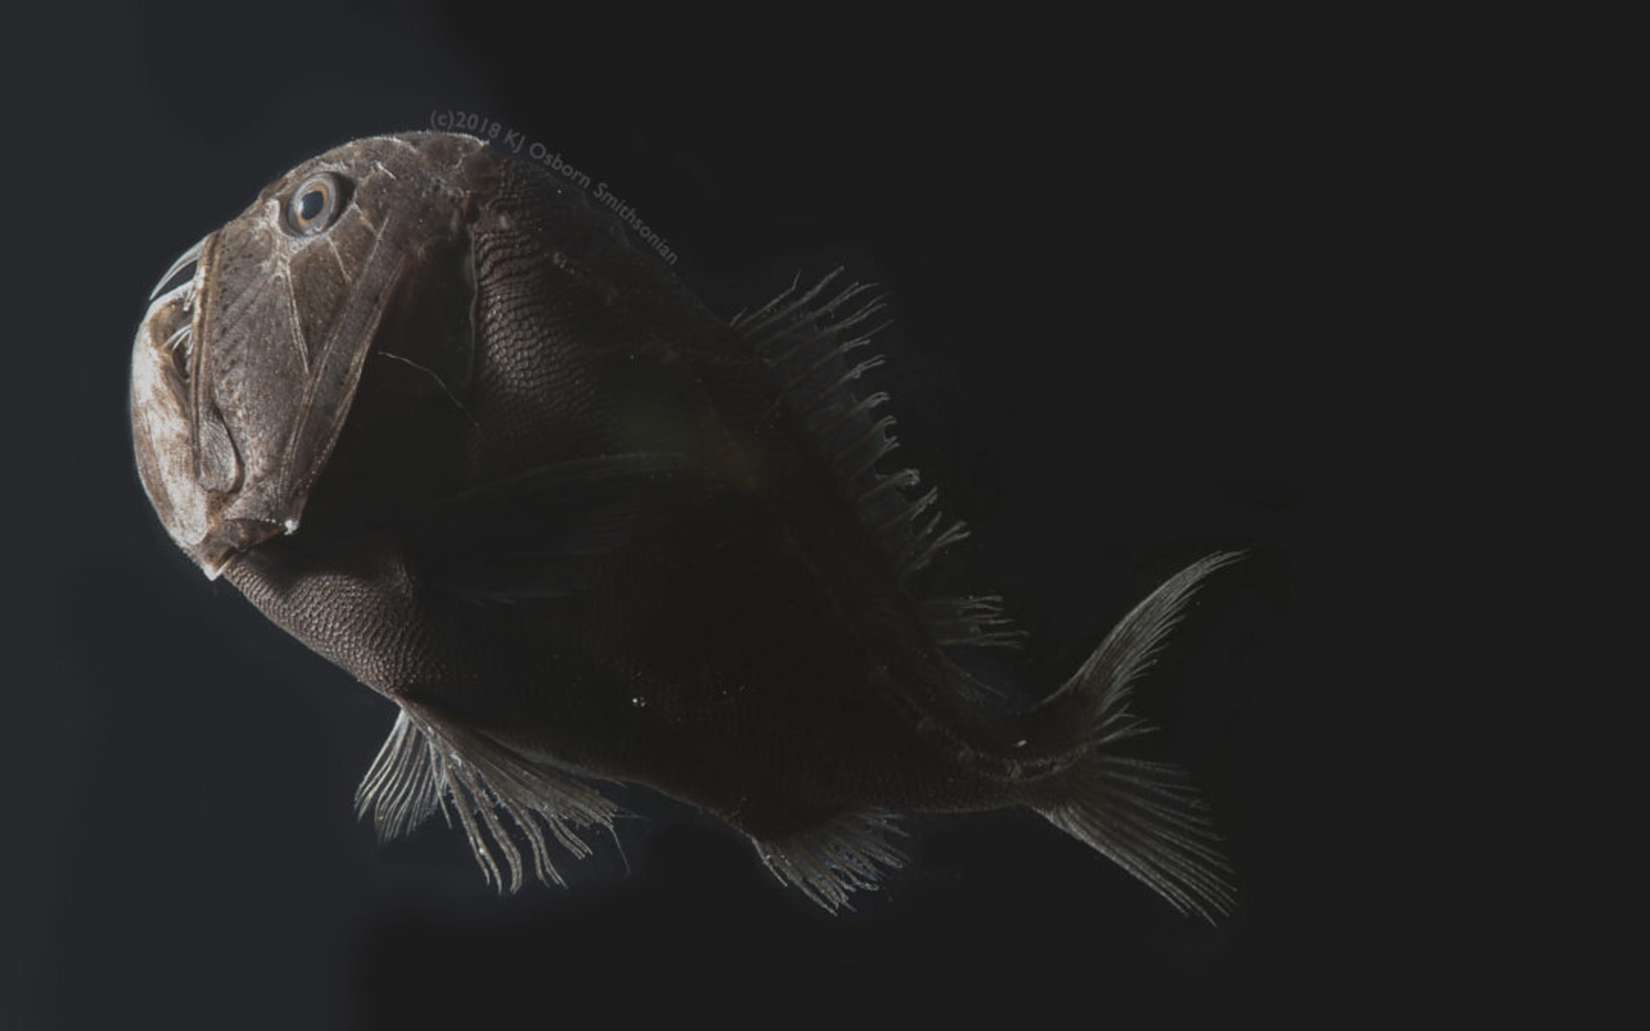 Des poissons des abysses ont une peau ultra-noire qui les rend invisibles